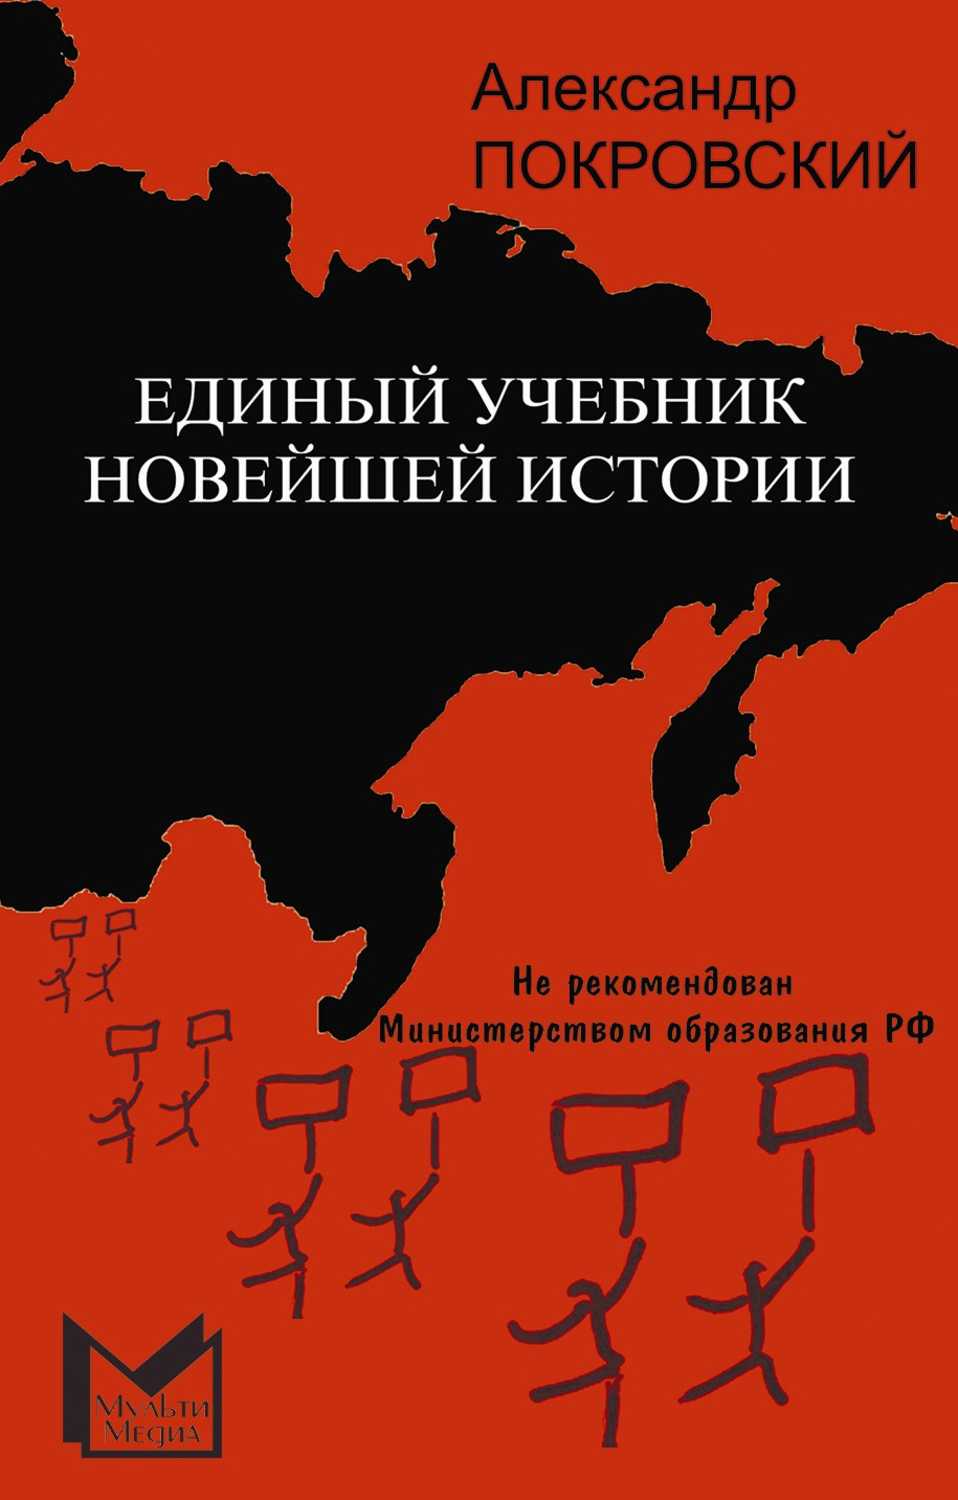 Единый учебник новейшей истории, Покровский Александр Михайлович